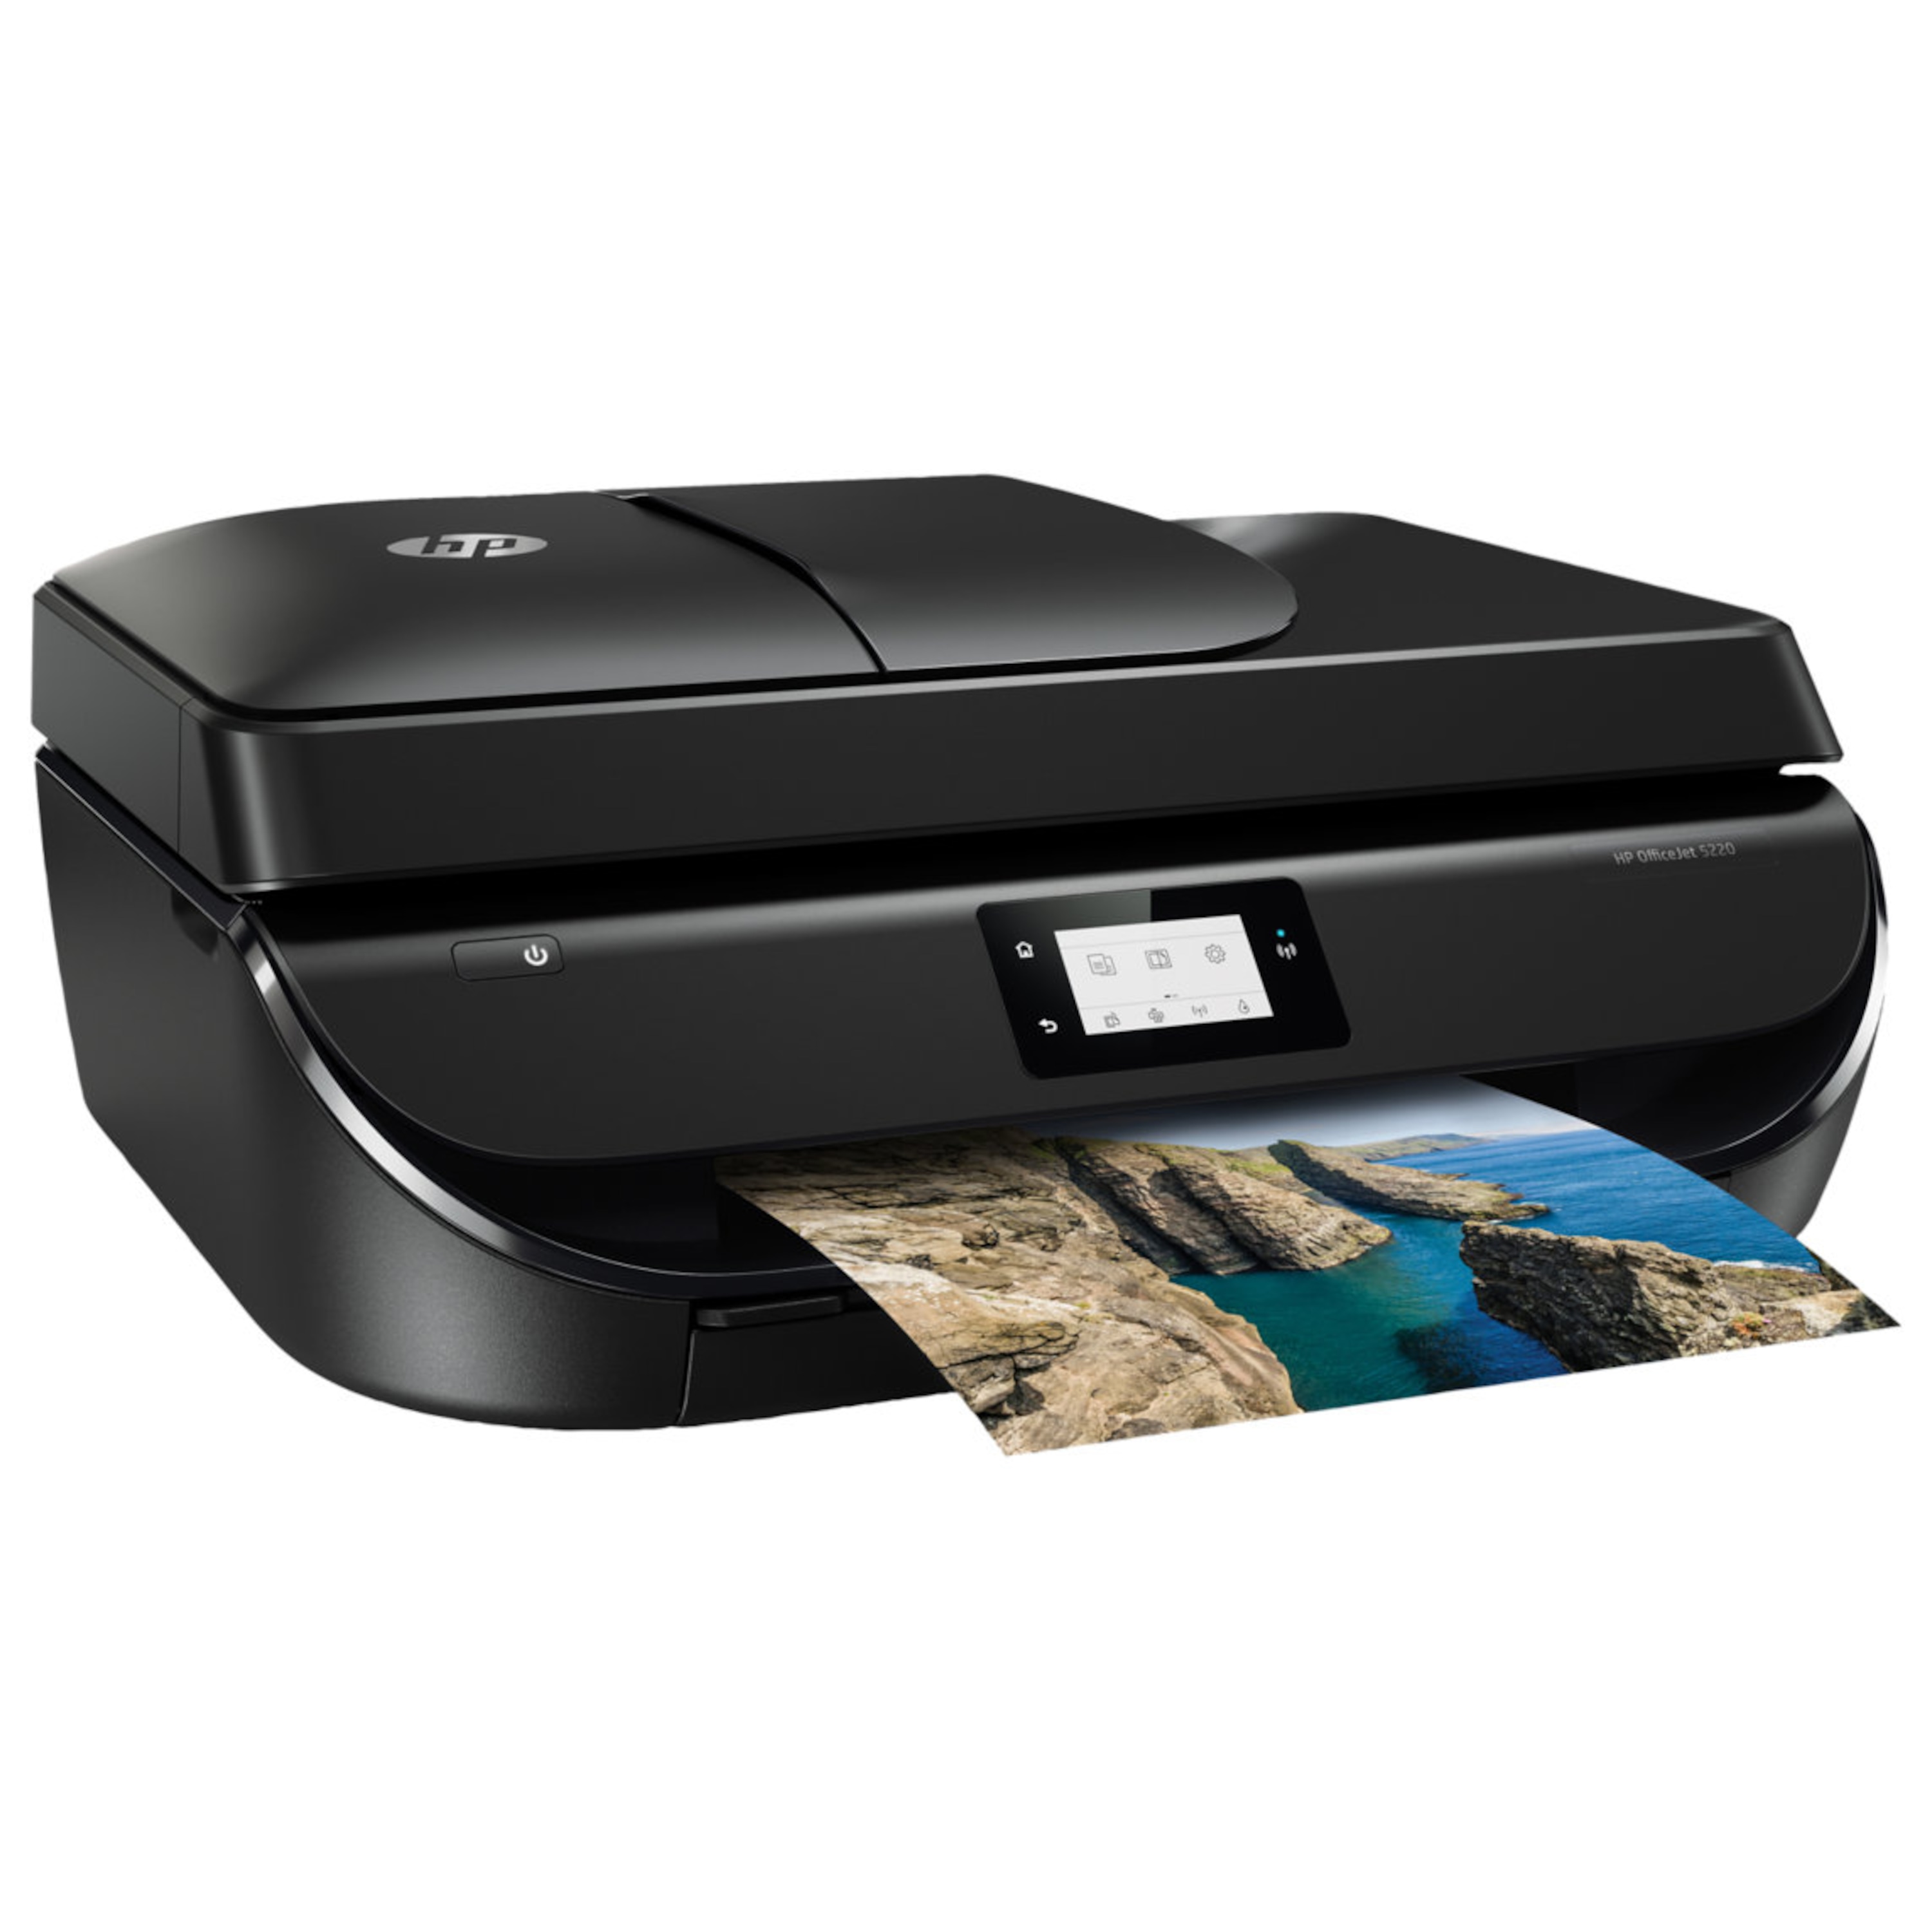 HP OfficeJet 5220 All-in-One Drucker - Drucken, Kopieren, Scannen und Faxen mit einem Gerät mit Ihrem PC, Smartphone und Tablet-PC